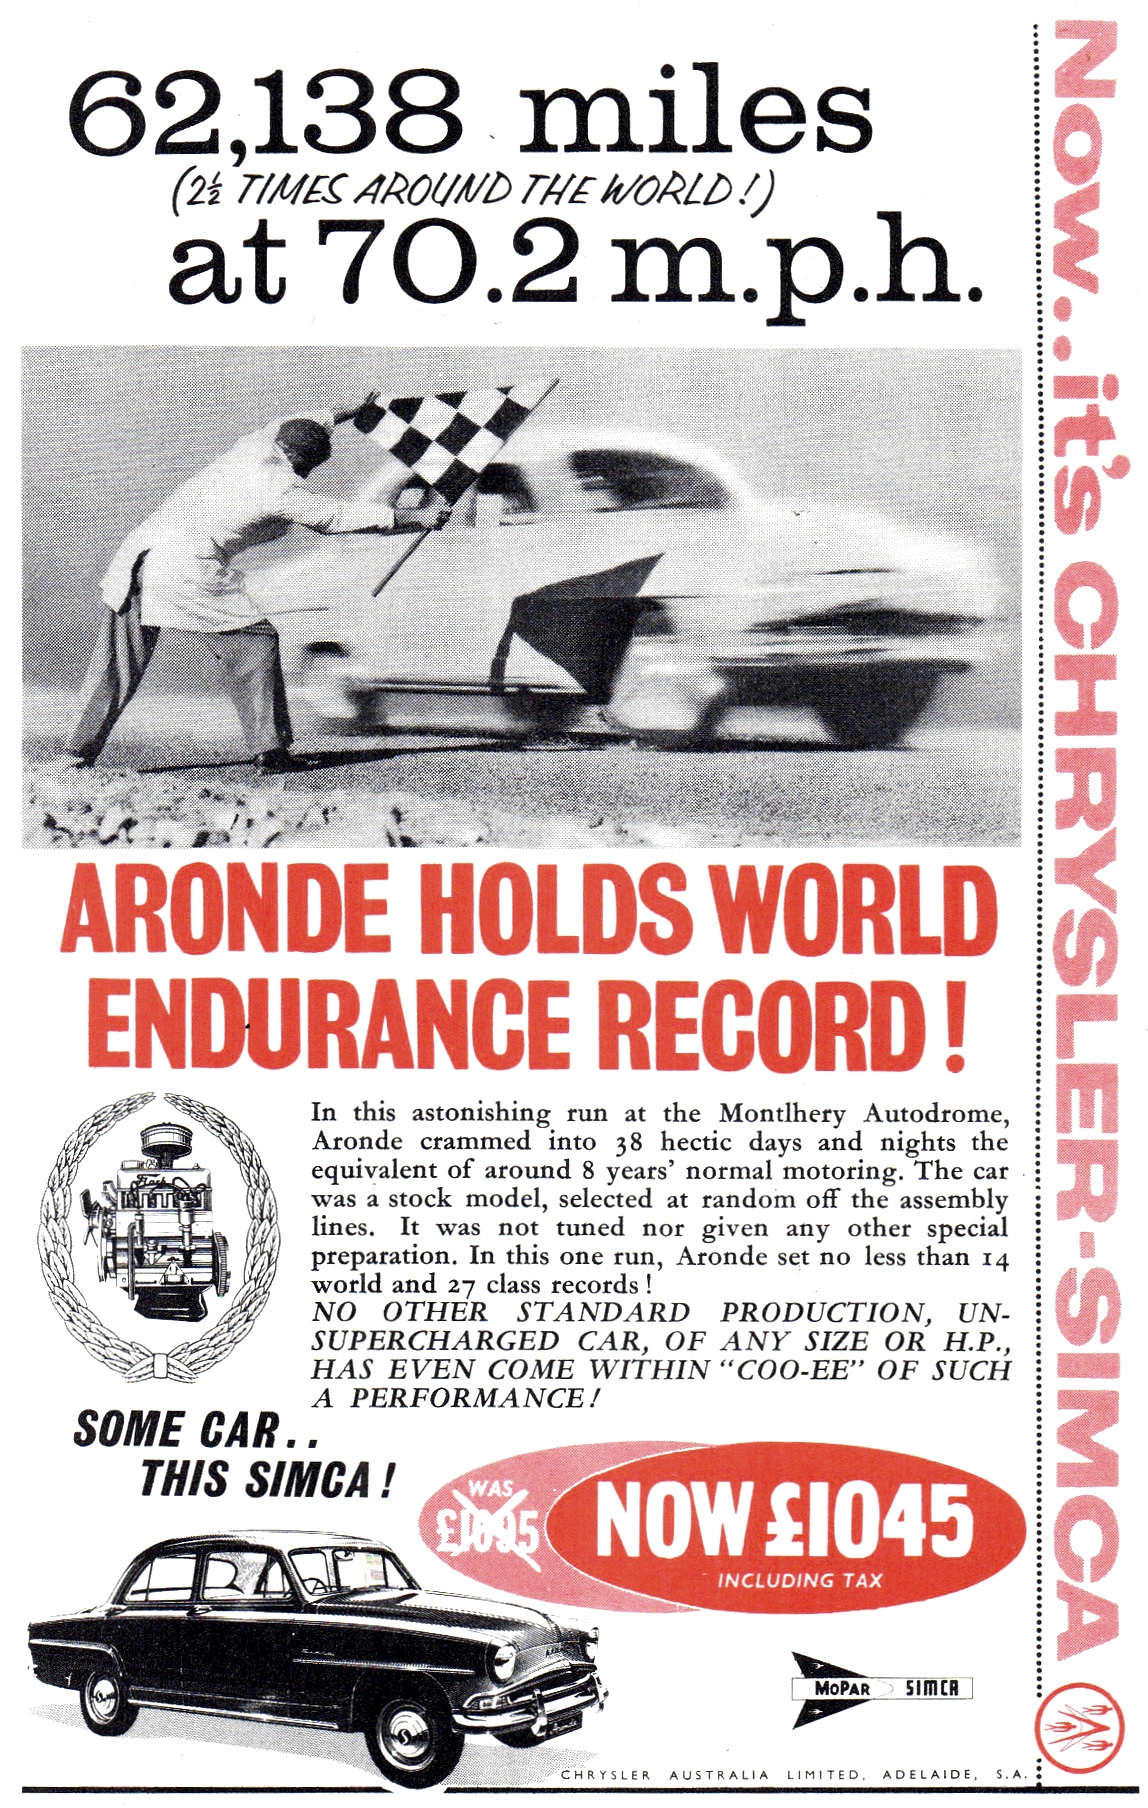 1959 Chrysler Simca Aronde - Endurance Record